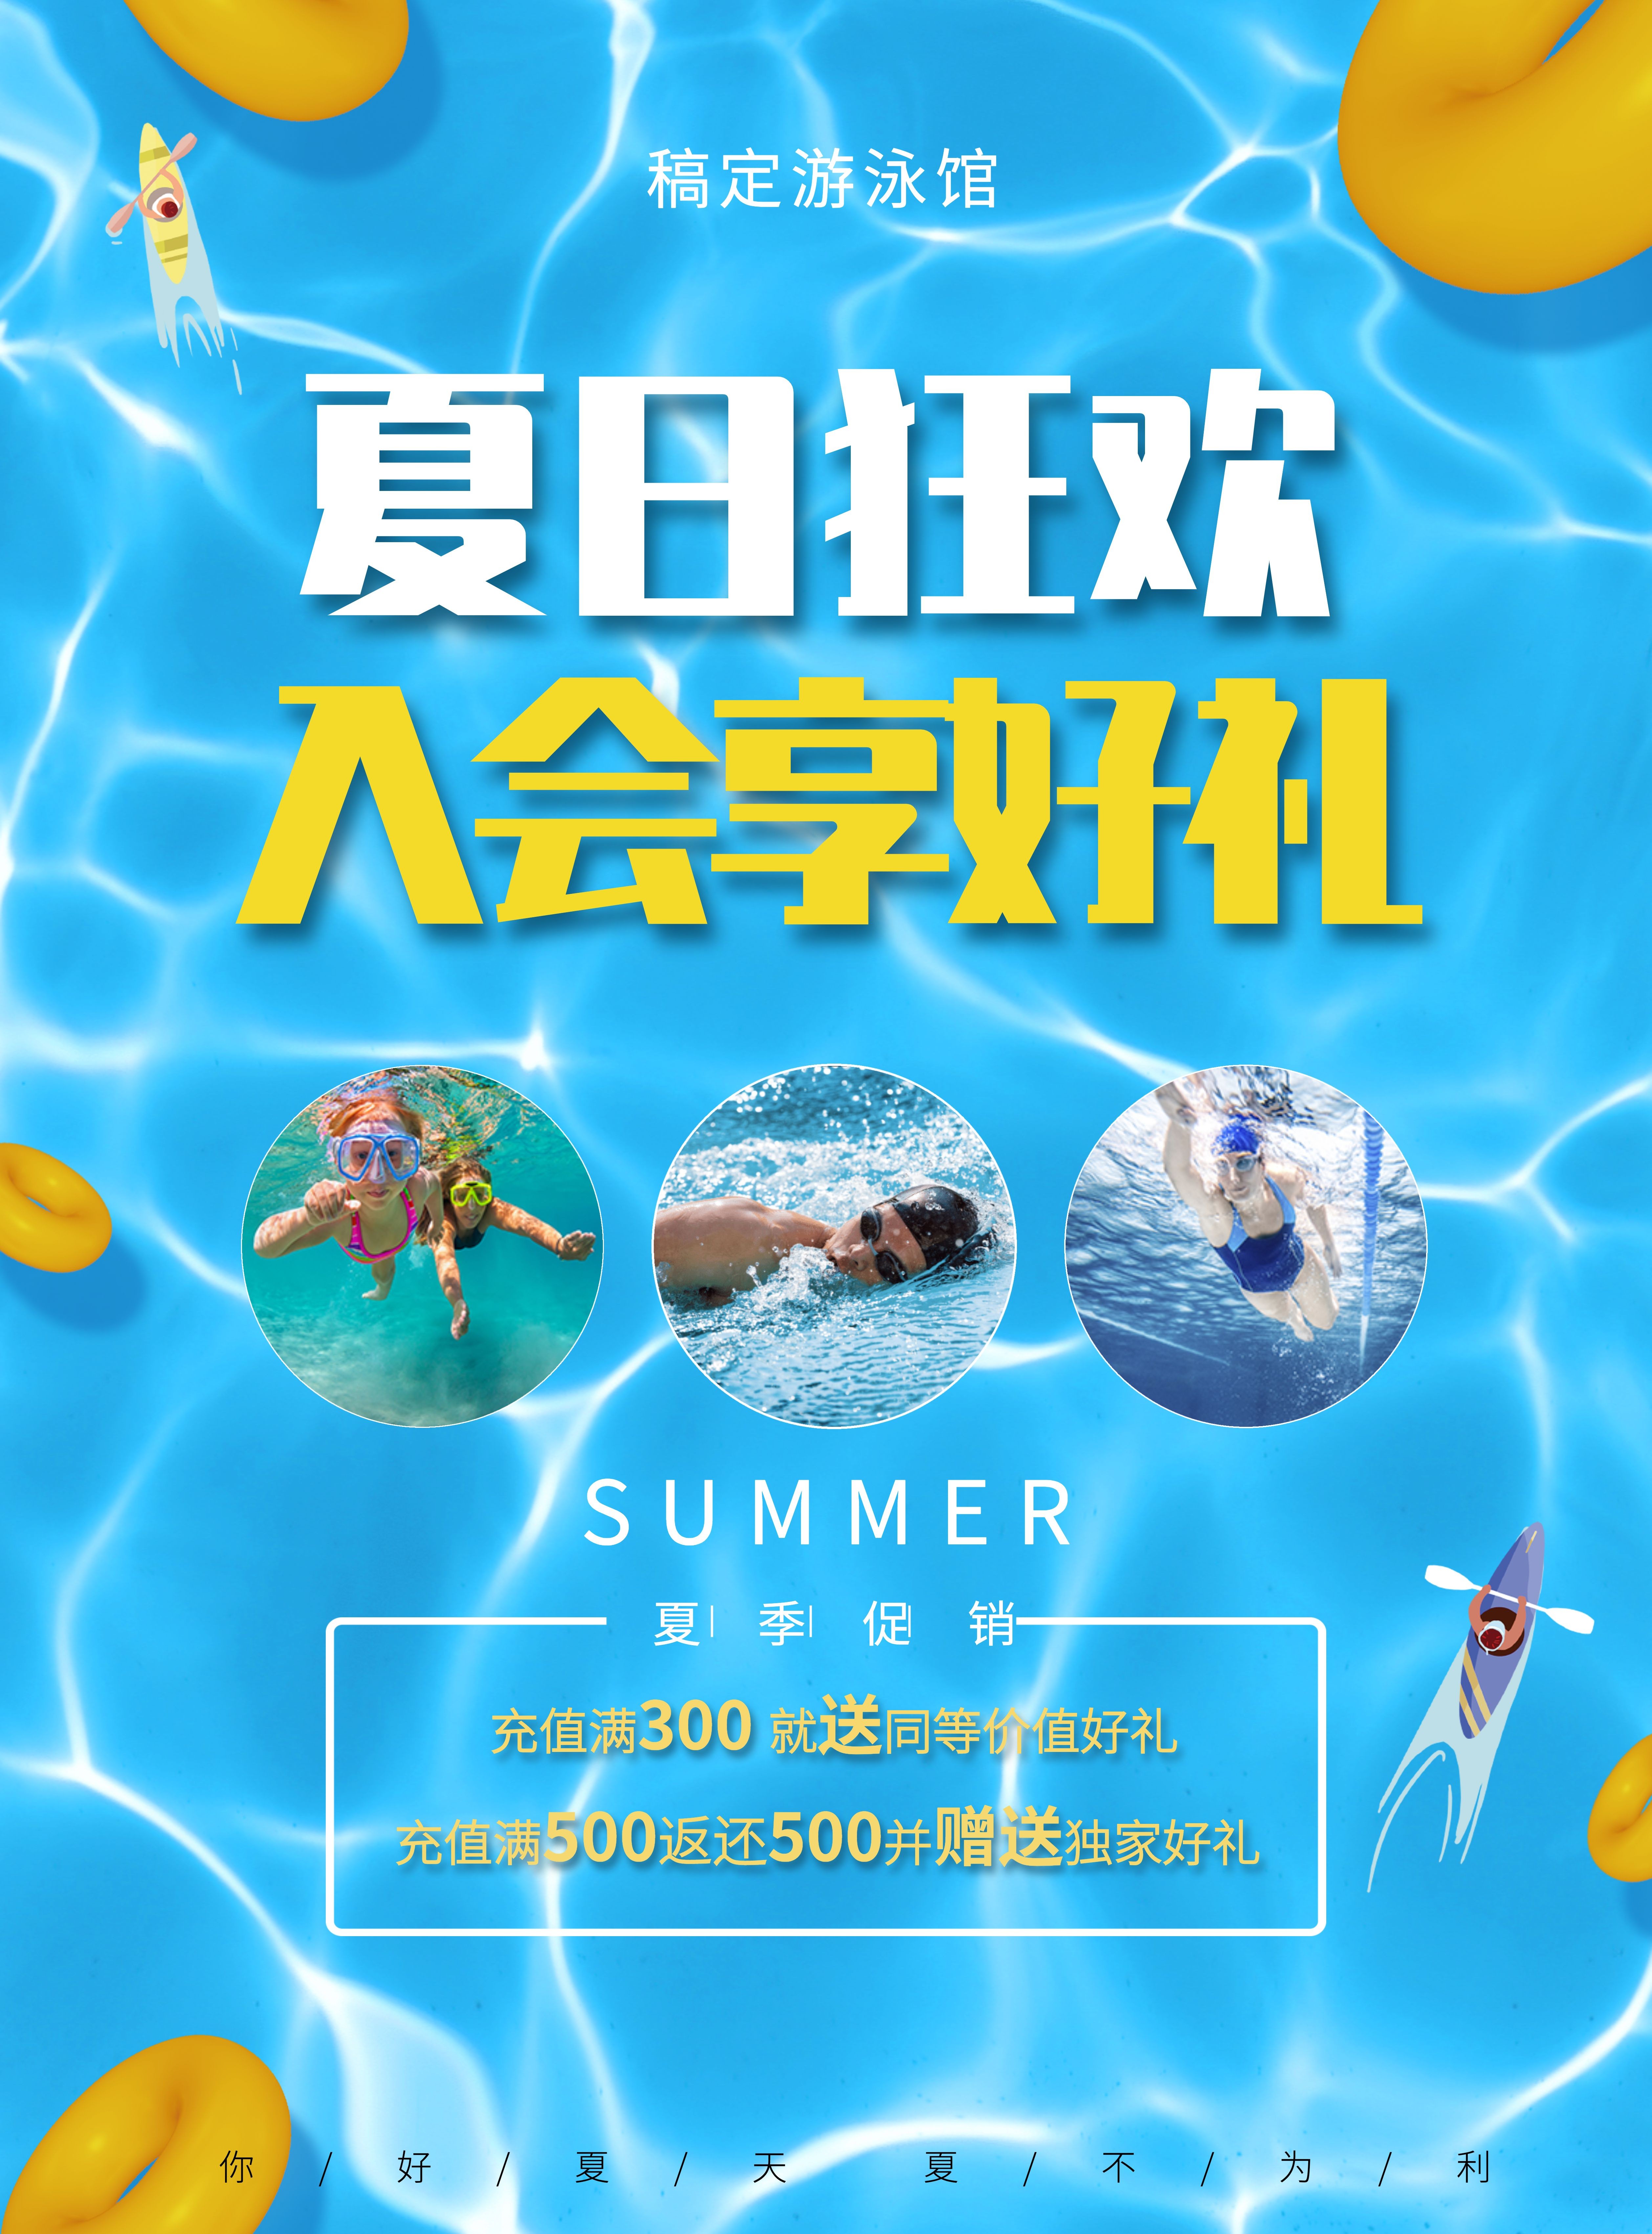 入会享好礼游泳馆夏季促销优惠张贴海报预览效果